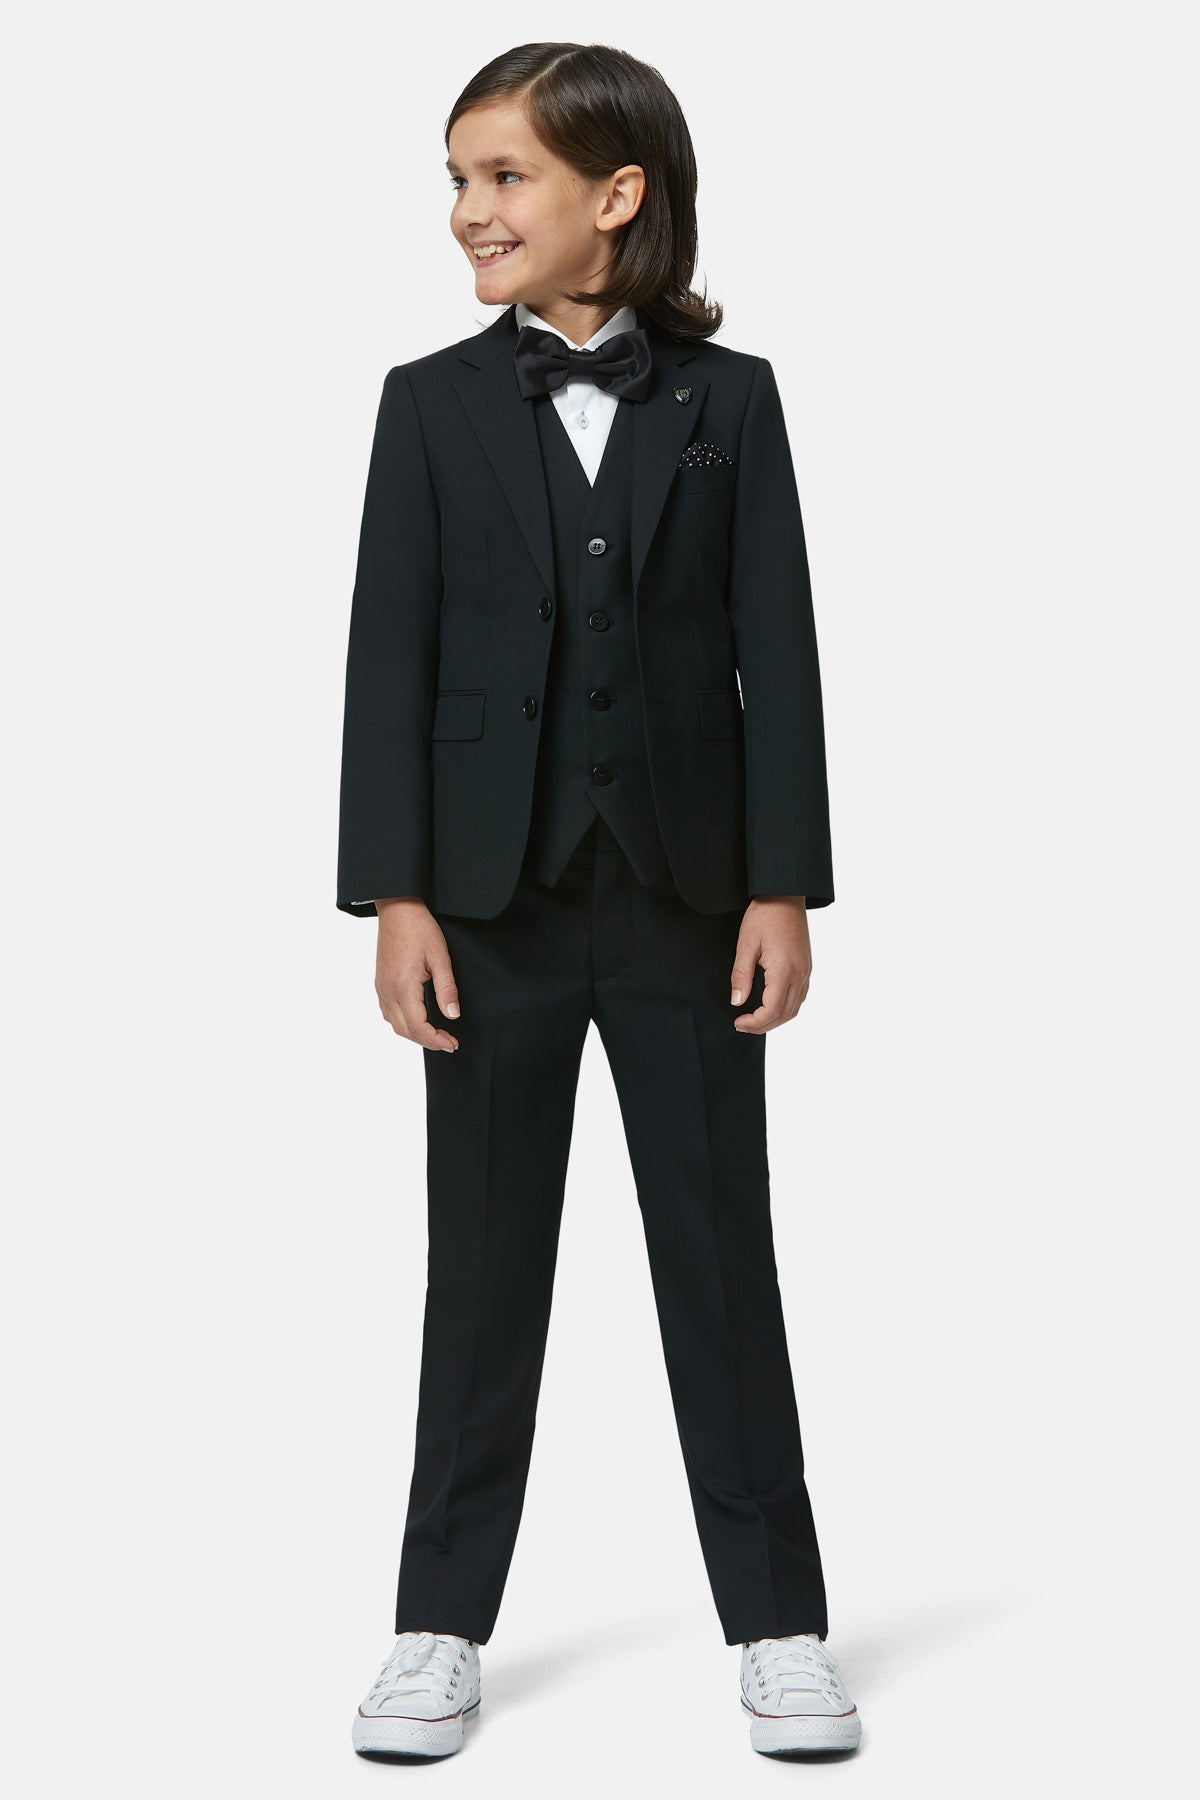 Baby Boys Tuxedo Suit Formal Suit Set Wedding Suits | Wish | Kids suits,  Boys formal wear, Boys formal suits